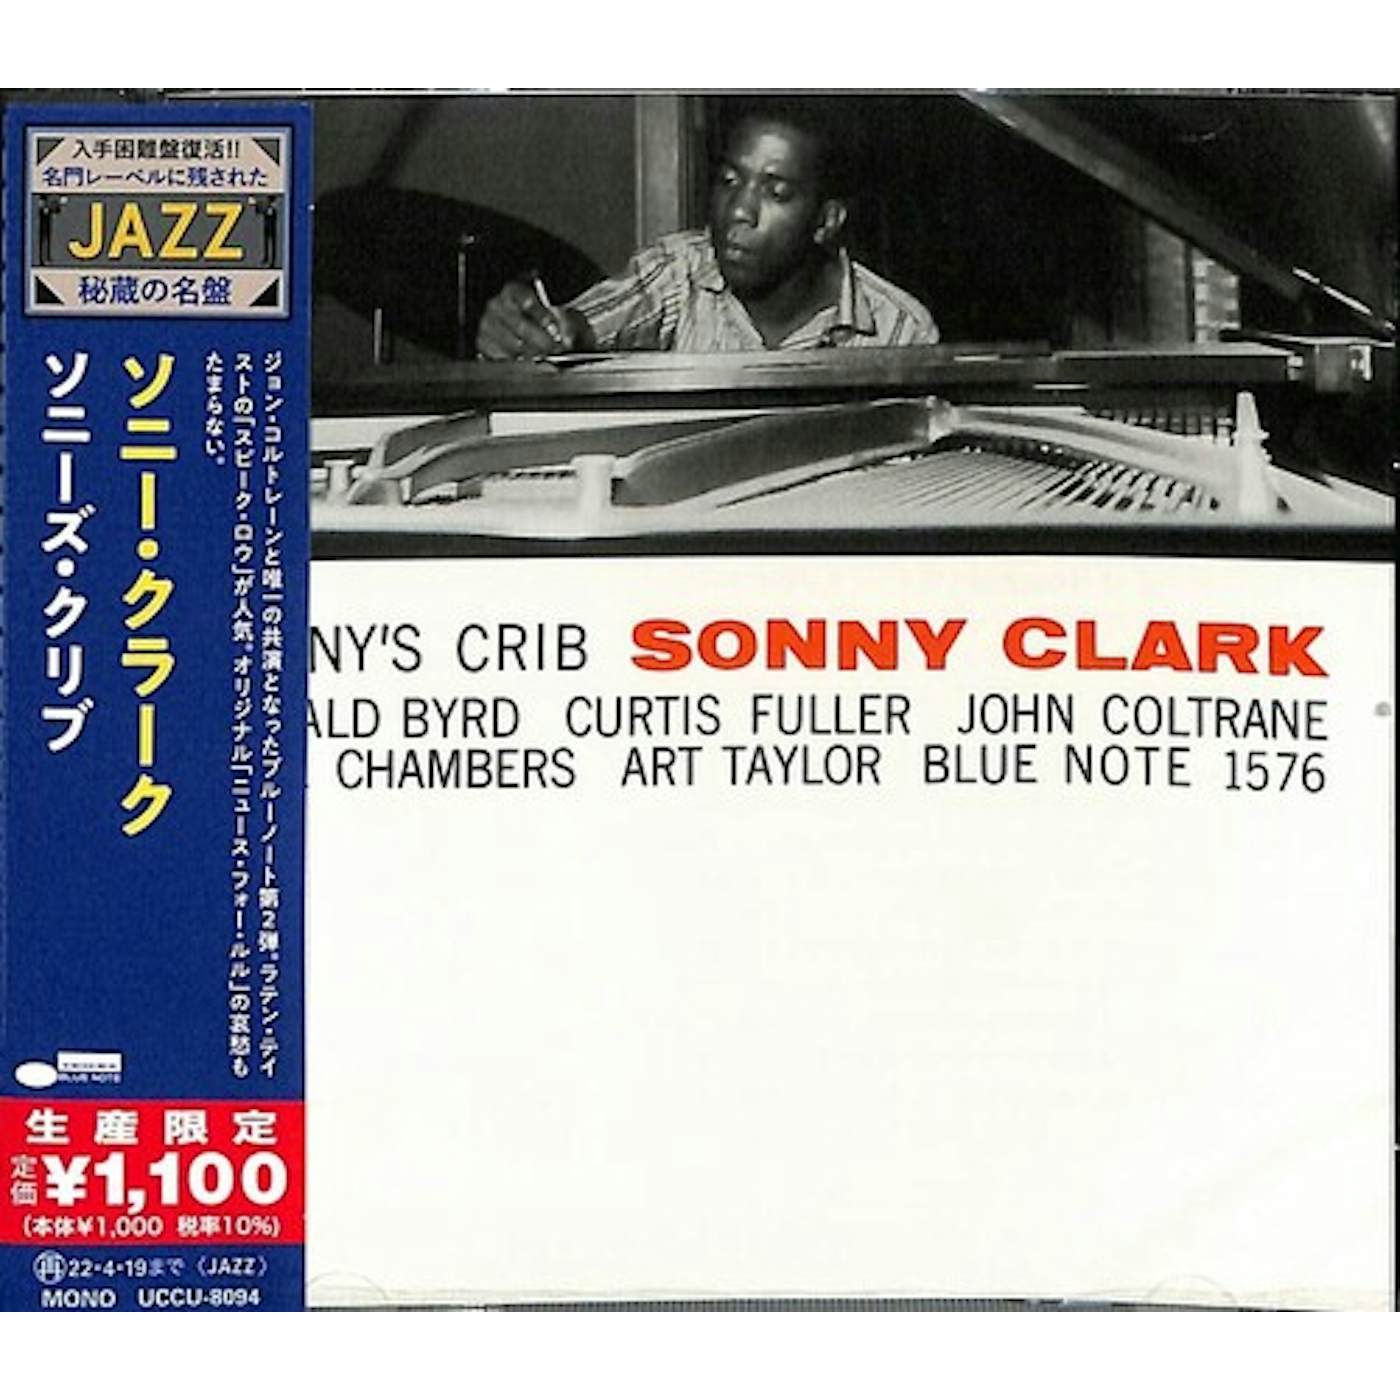 Sonny Clark SONNY'S CRIB CD